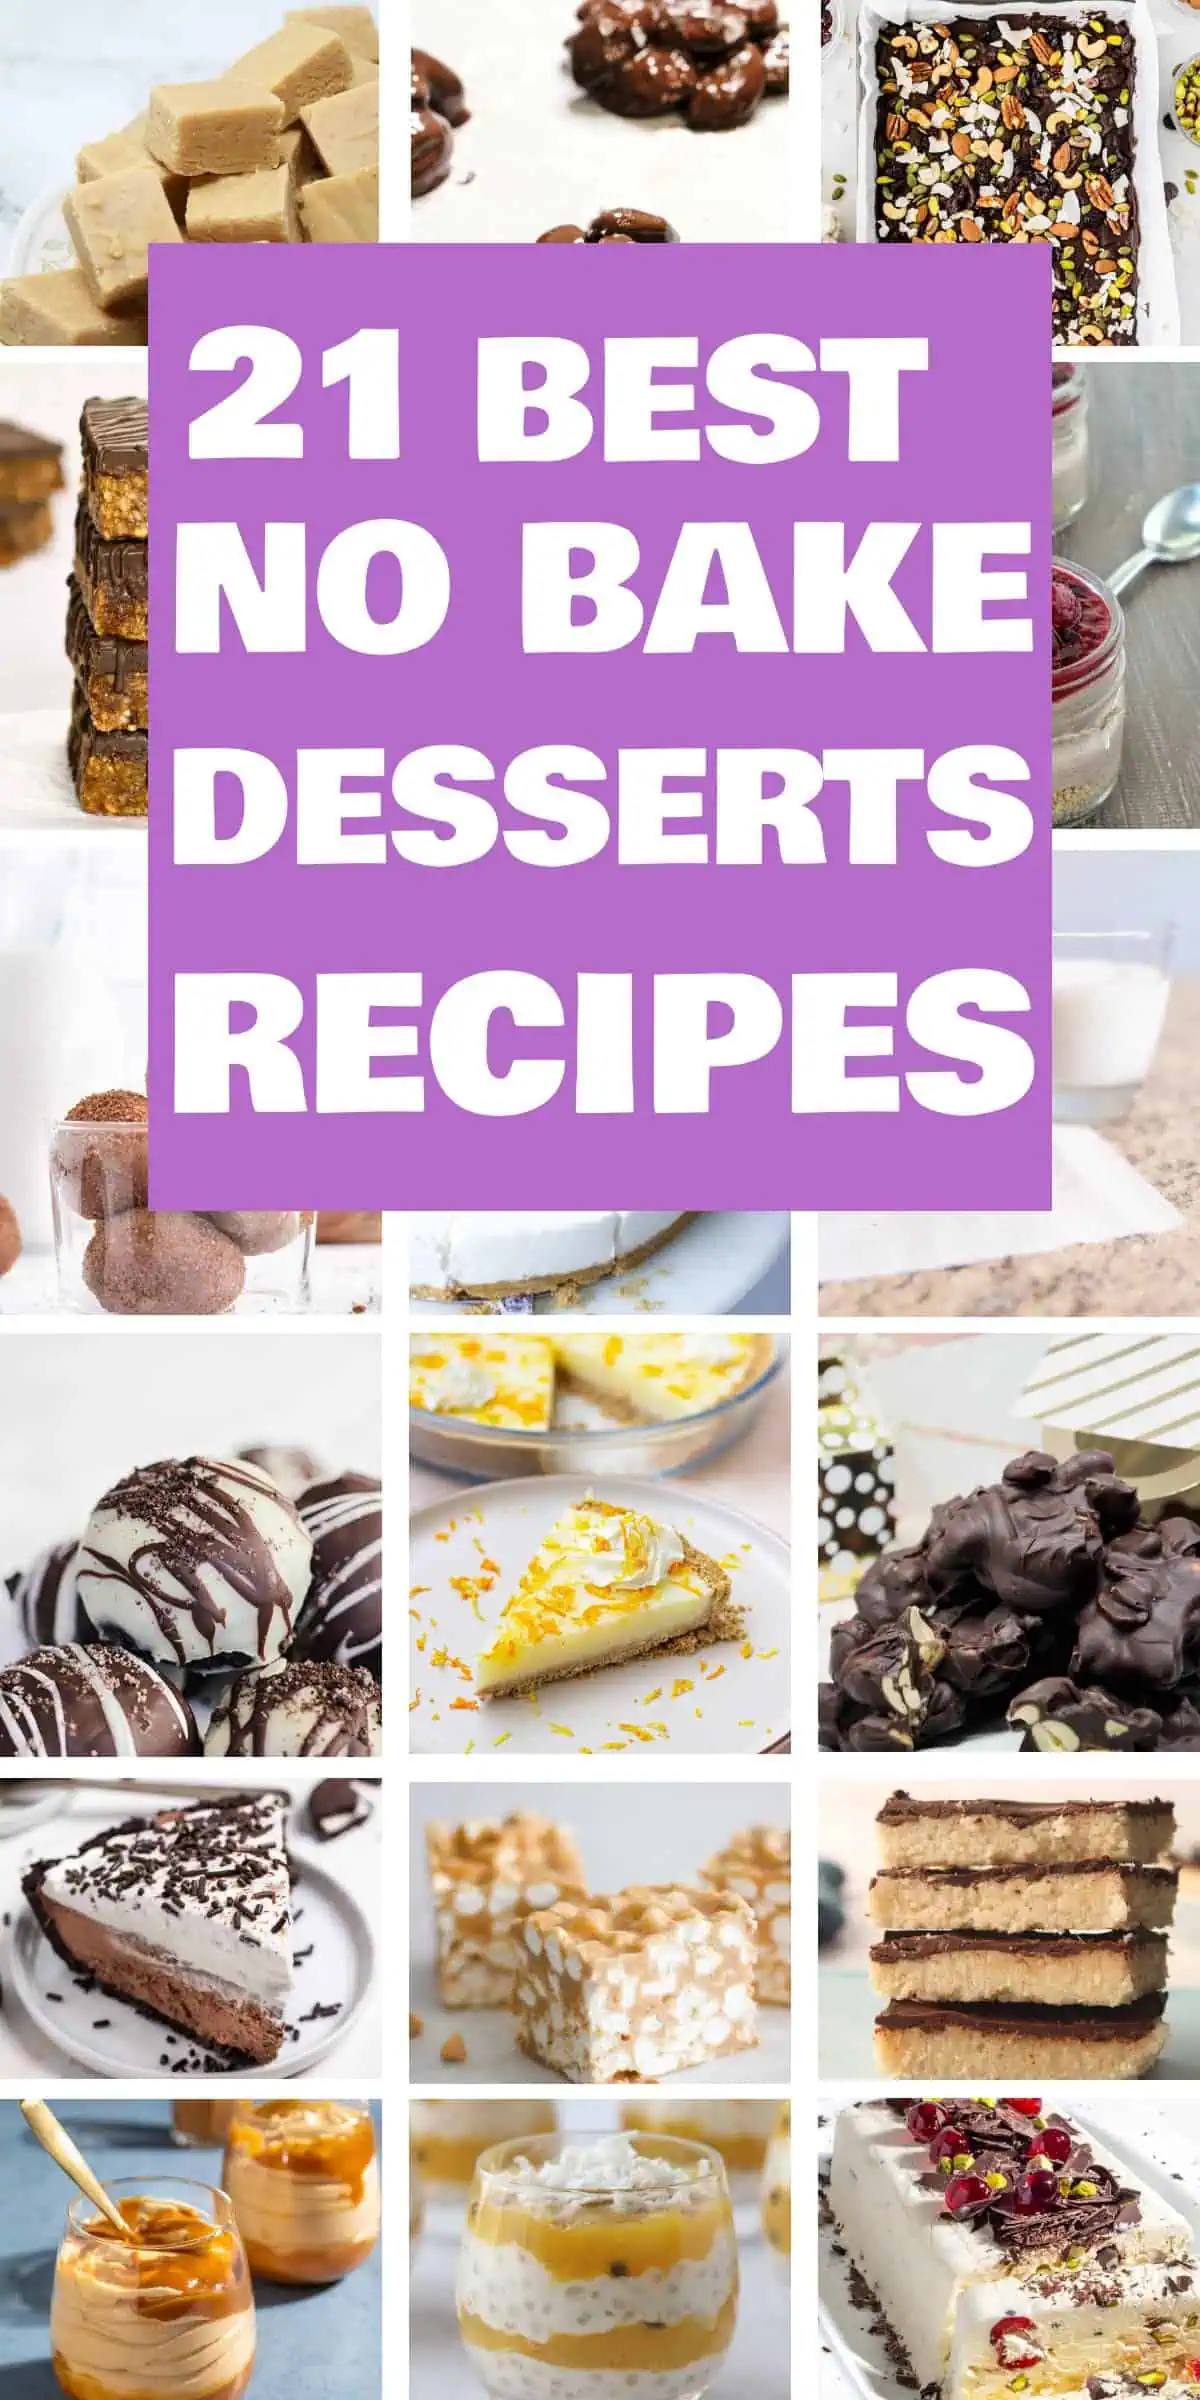 21 Best No Bake Desserts